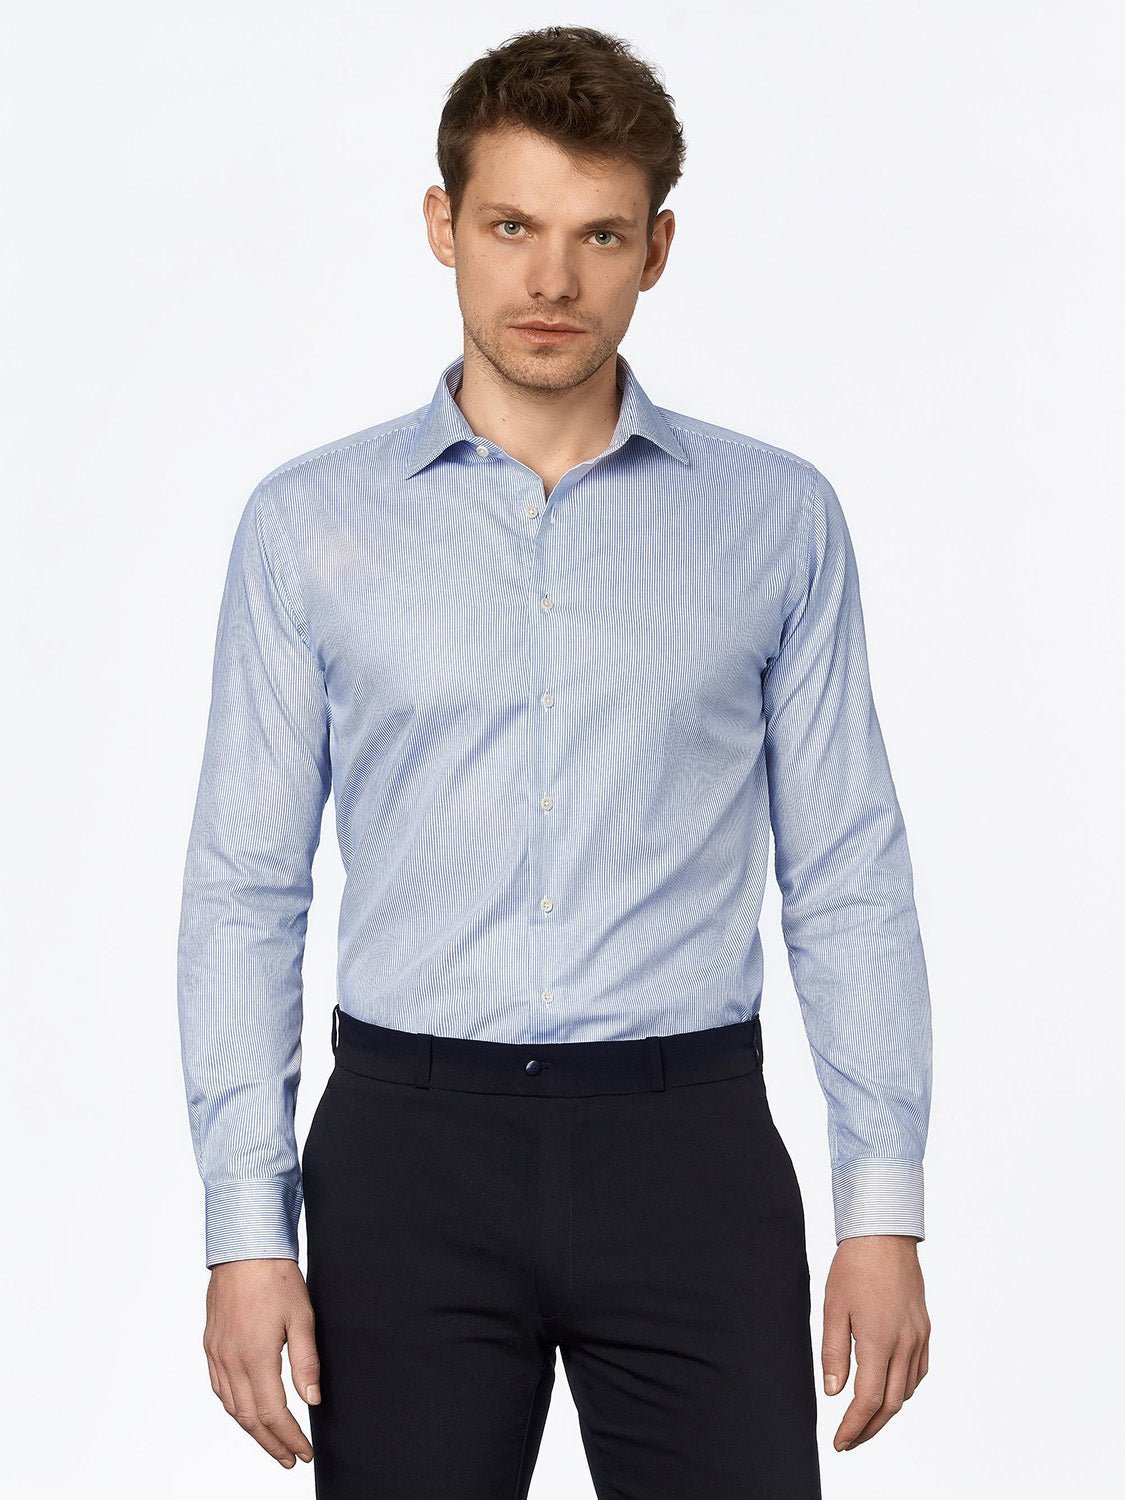 carpasus sustainable organic cotton dress shirt blue stripe. Nachhaltiges Carpasus Businesshemd aus Bio Baumwolle in Streifen Blau